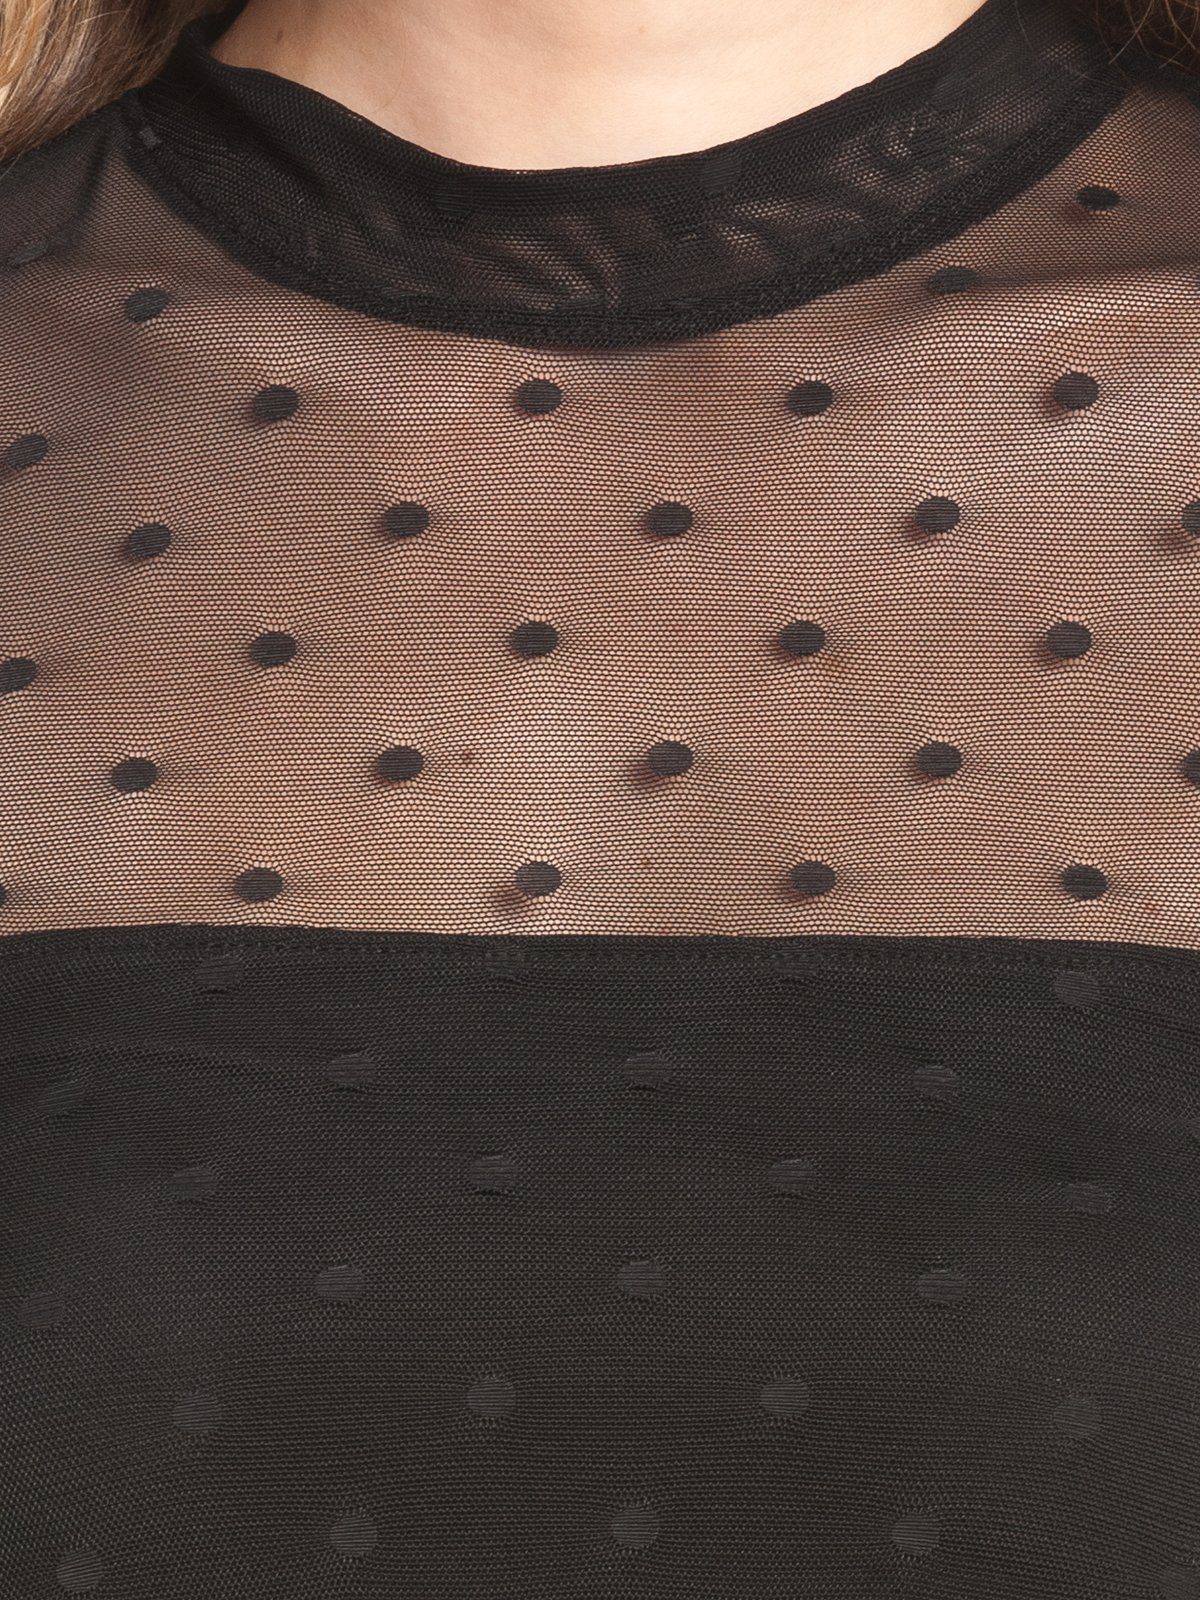 Damen Kleider Pussy Deluxe A-Linien-Kleid Black Dots